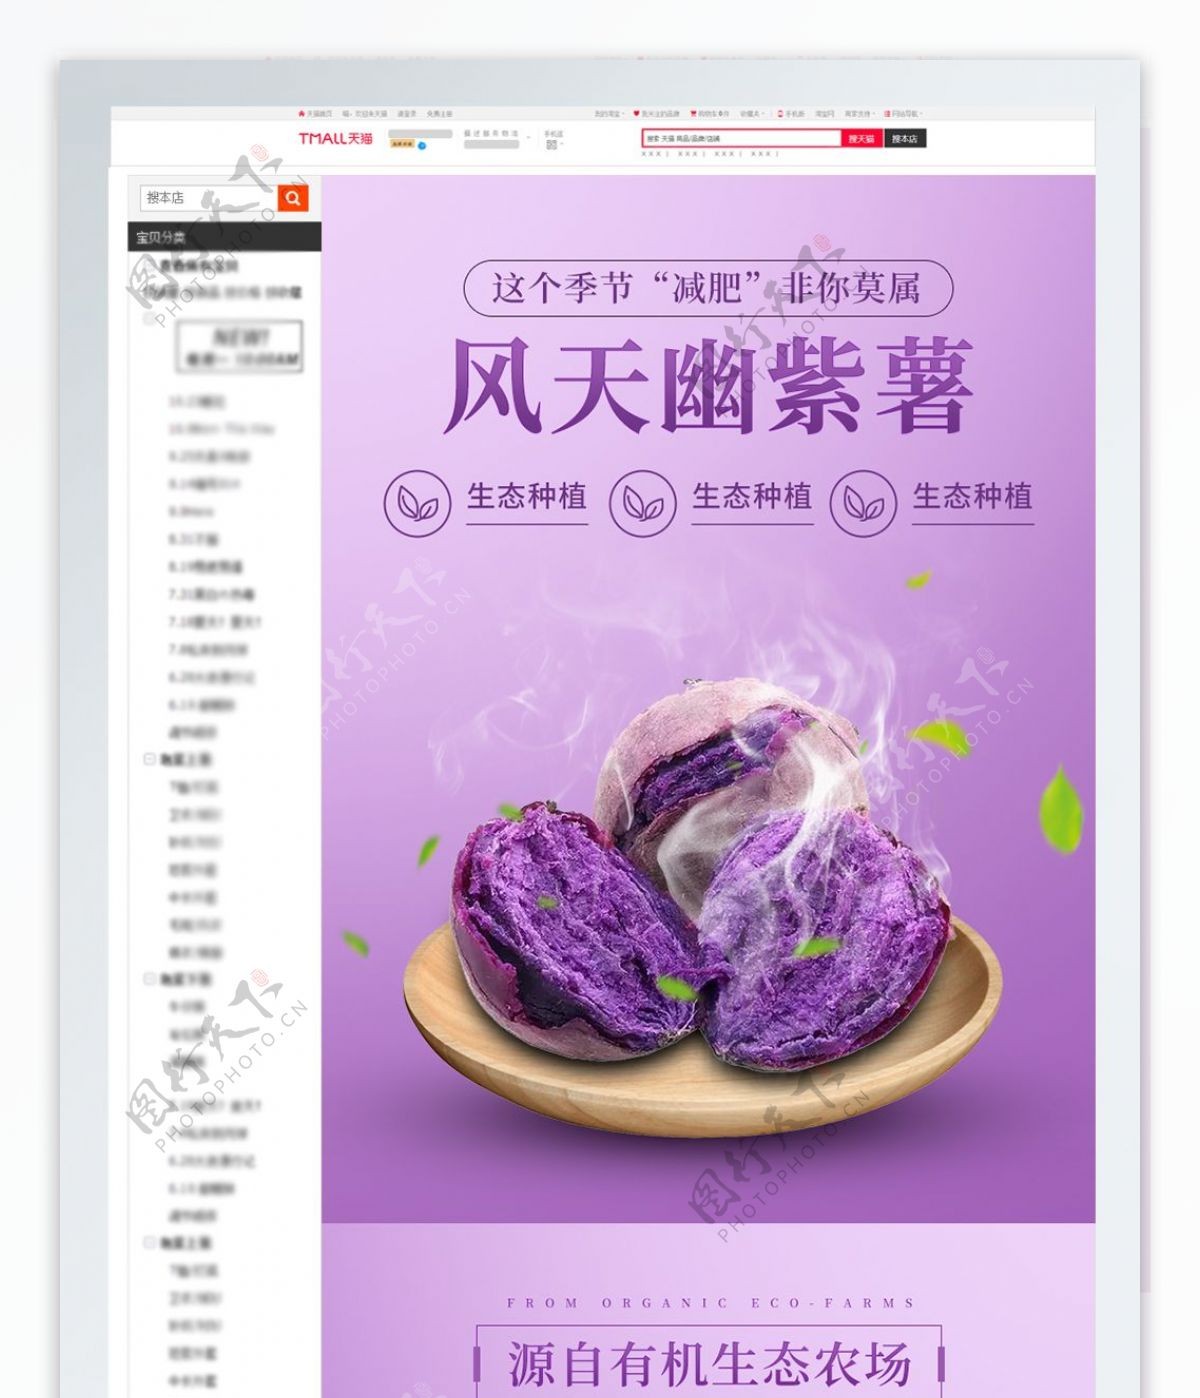 天猫淘宝紫薯红薯详情页模版